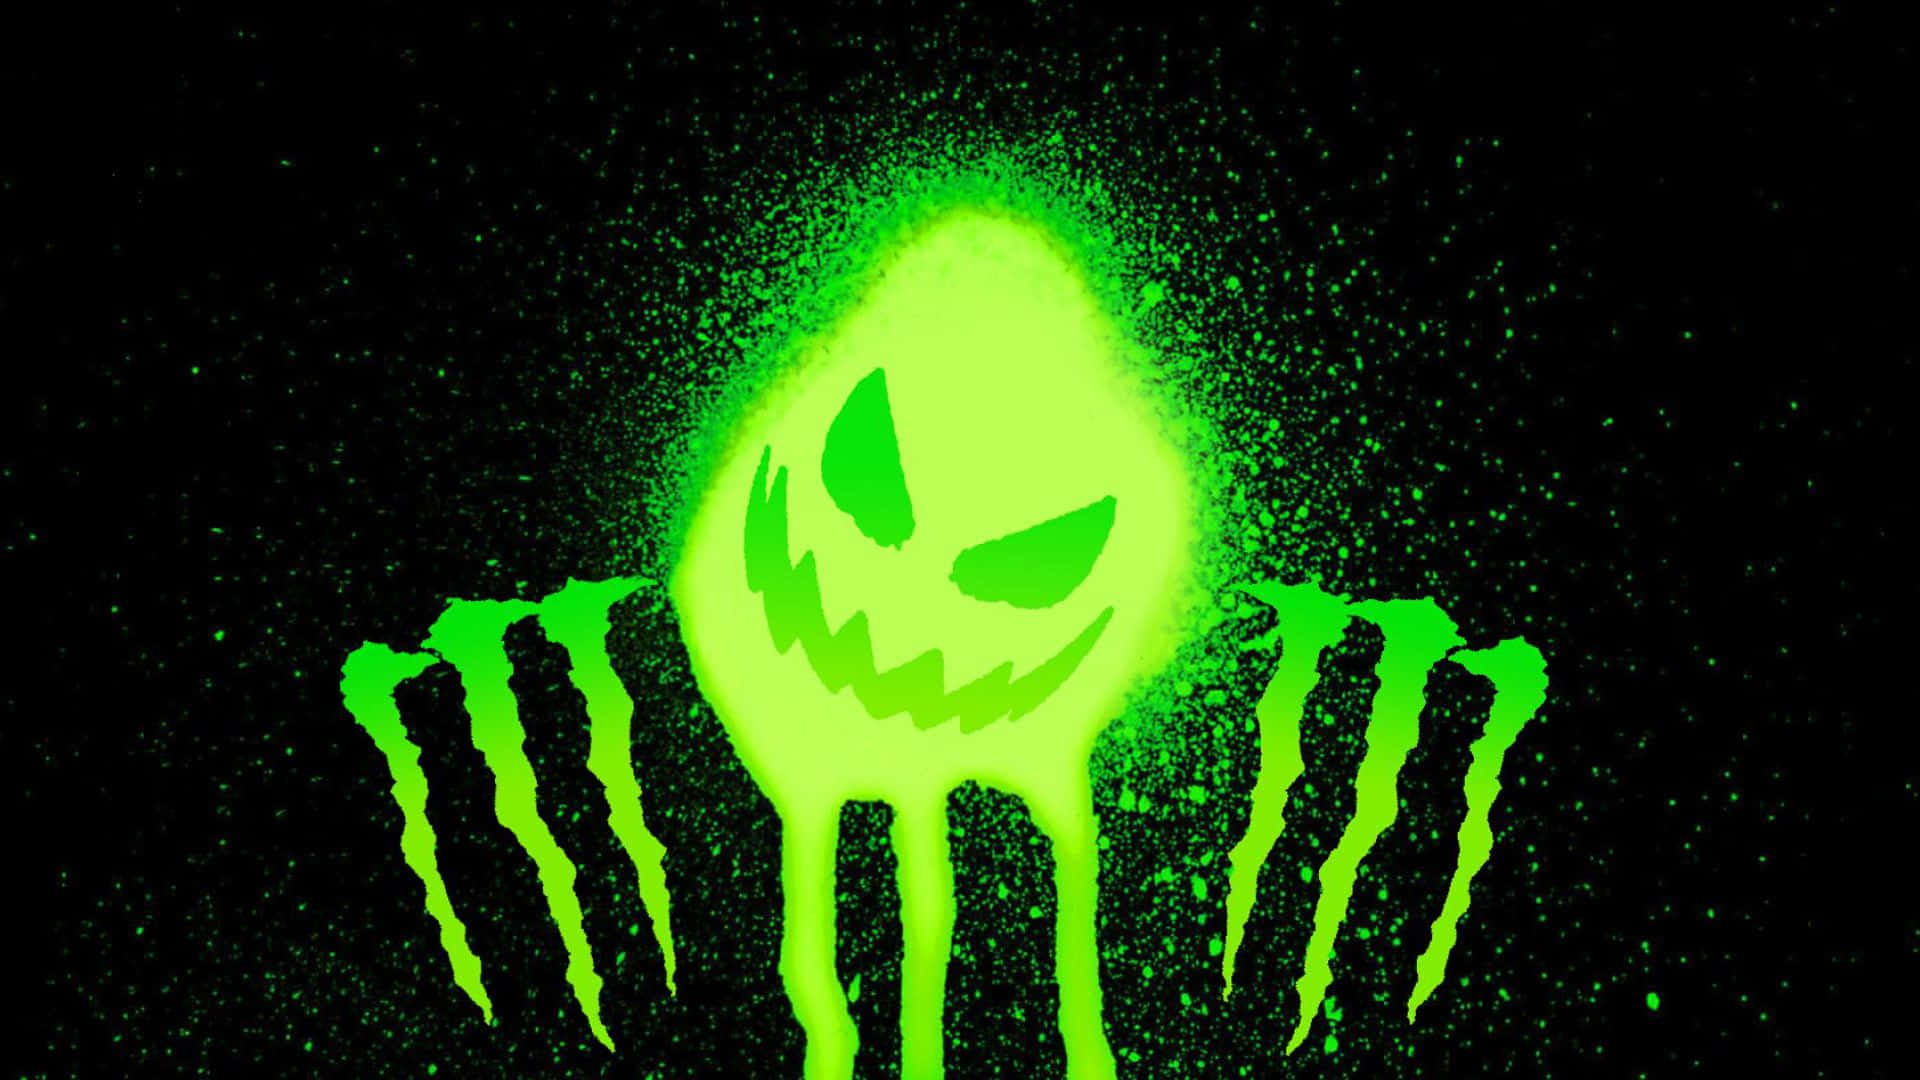 Monster Energy Logo On A Black Background Wallpaper